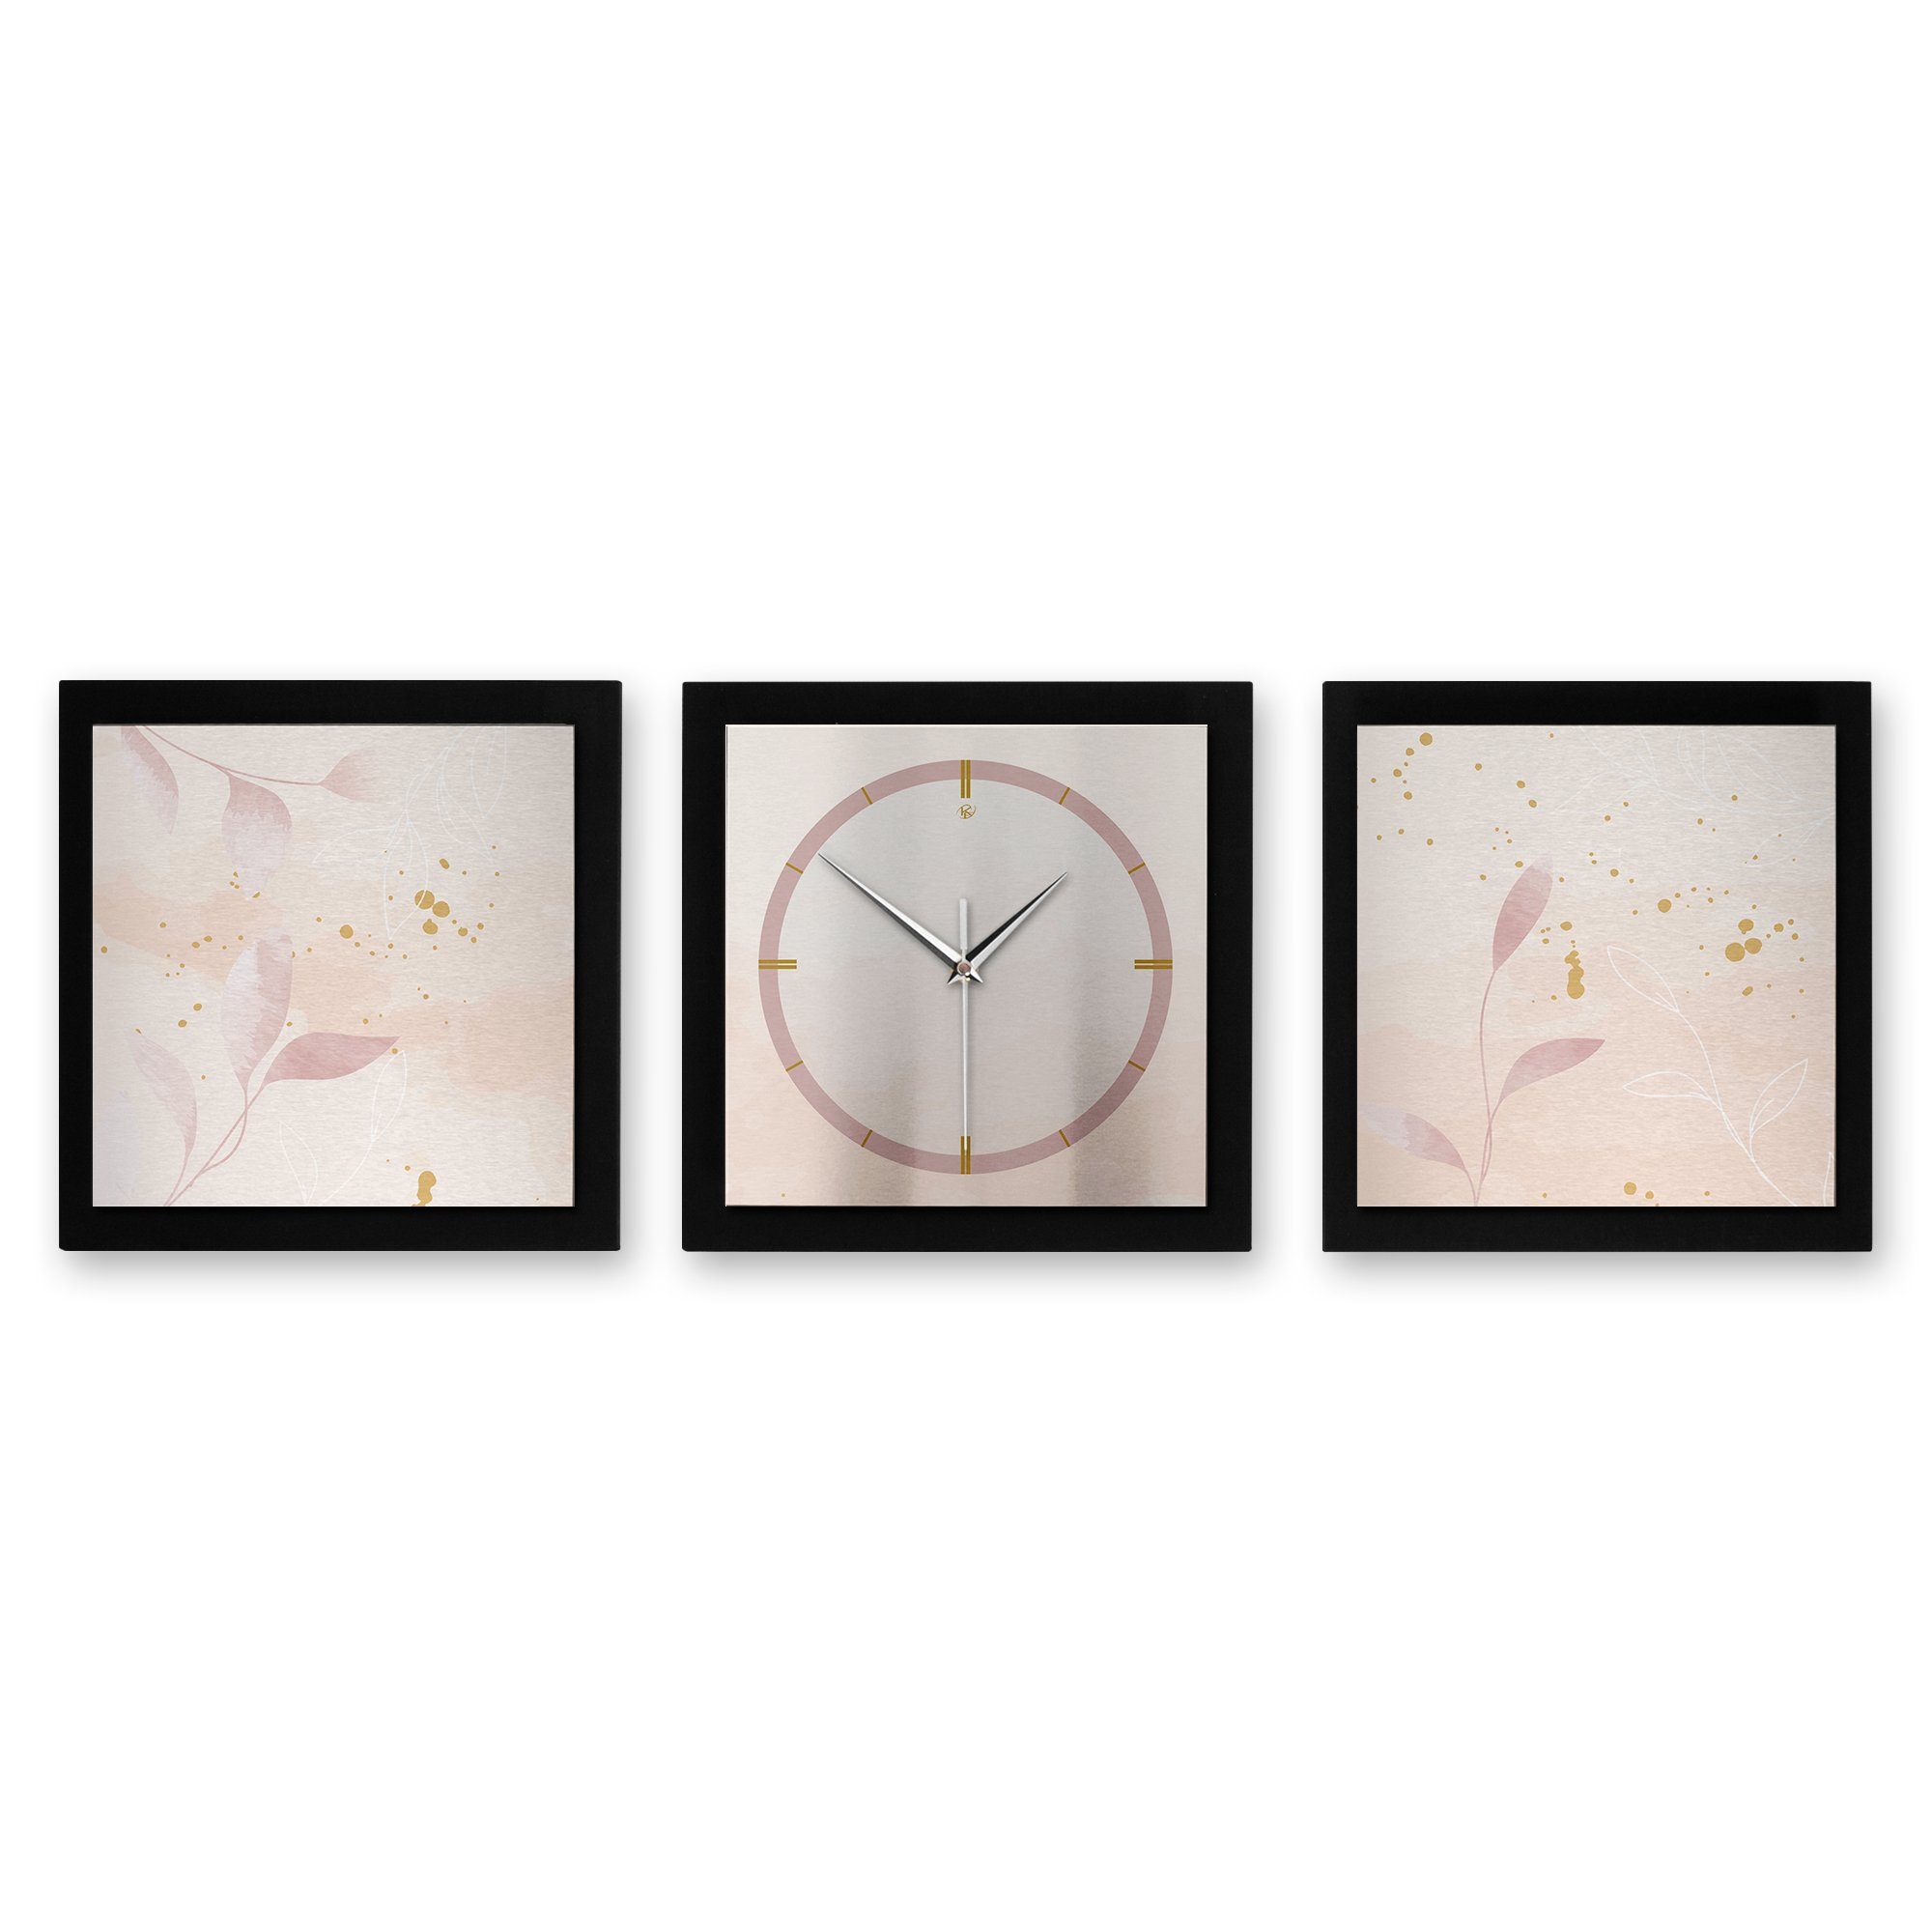 Kreative Feder Wanduhr Pale Pink (ohne Ticken; Funk- oder Quarzuhrwerk; elegant, außergewöhnlich, modern) groß (150x50cm)